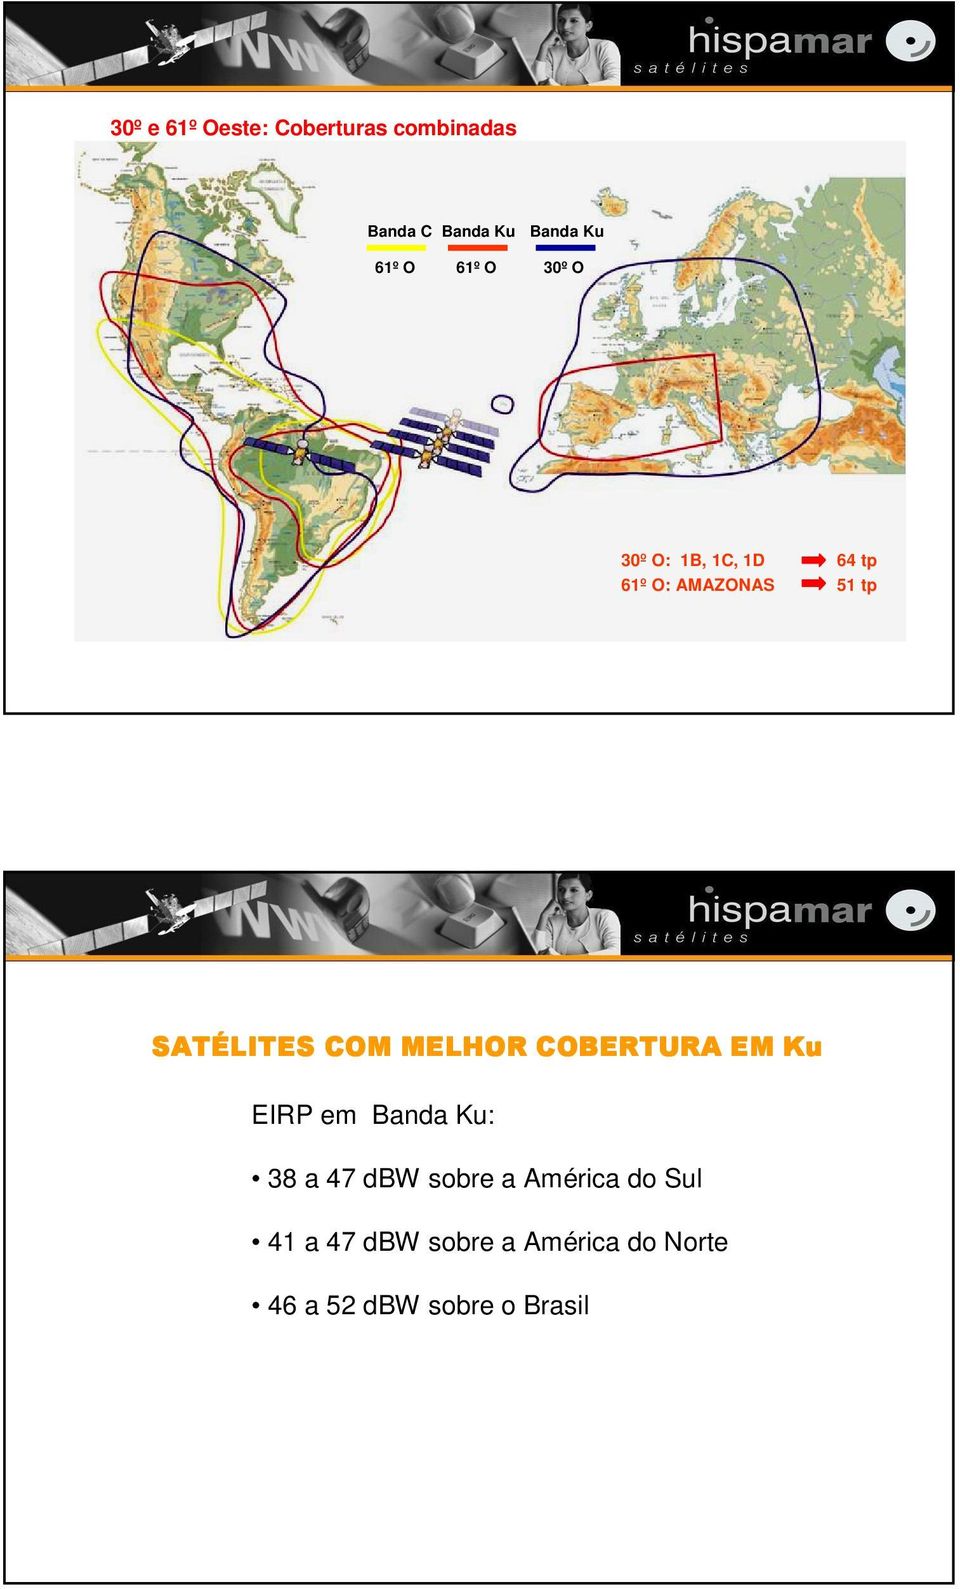 51 tp 1 EIRP em Banda Ku: 38 a 47 dbw sobre a América do Sul